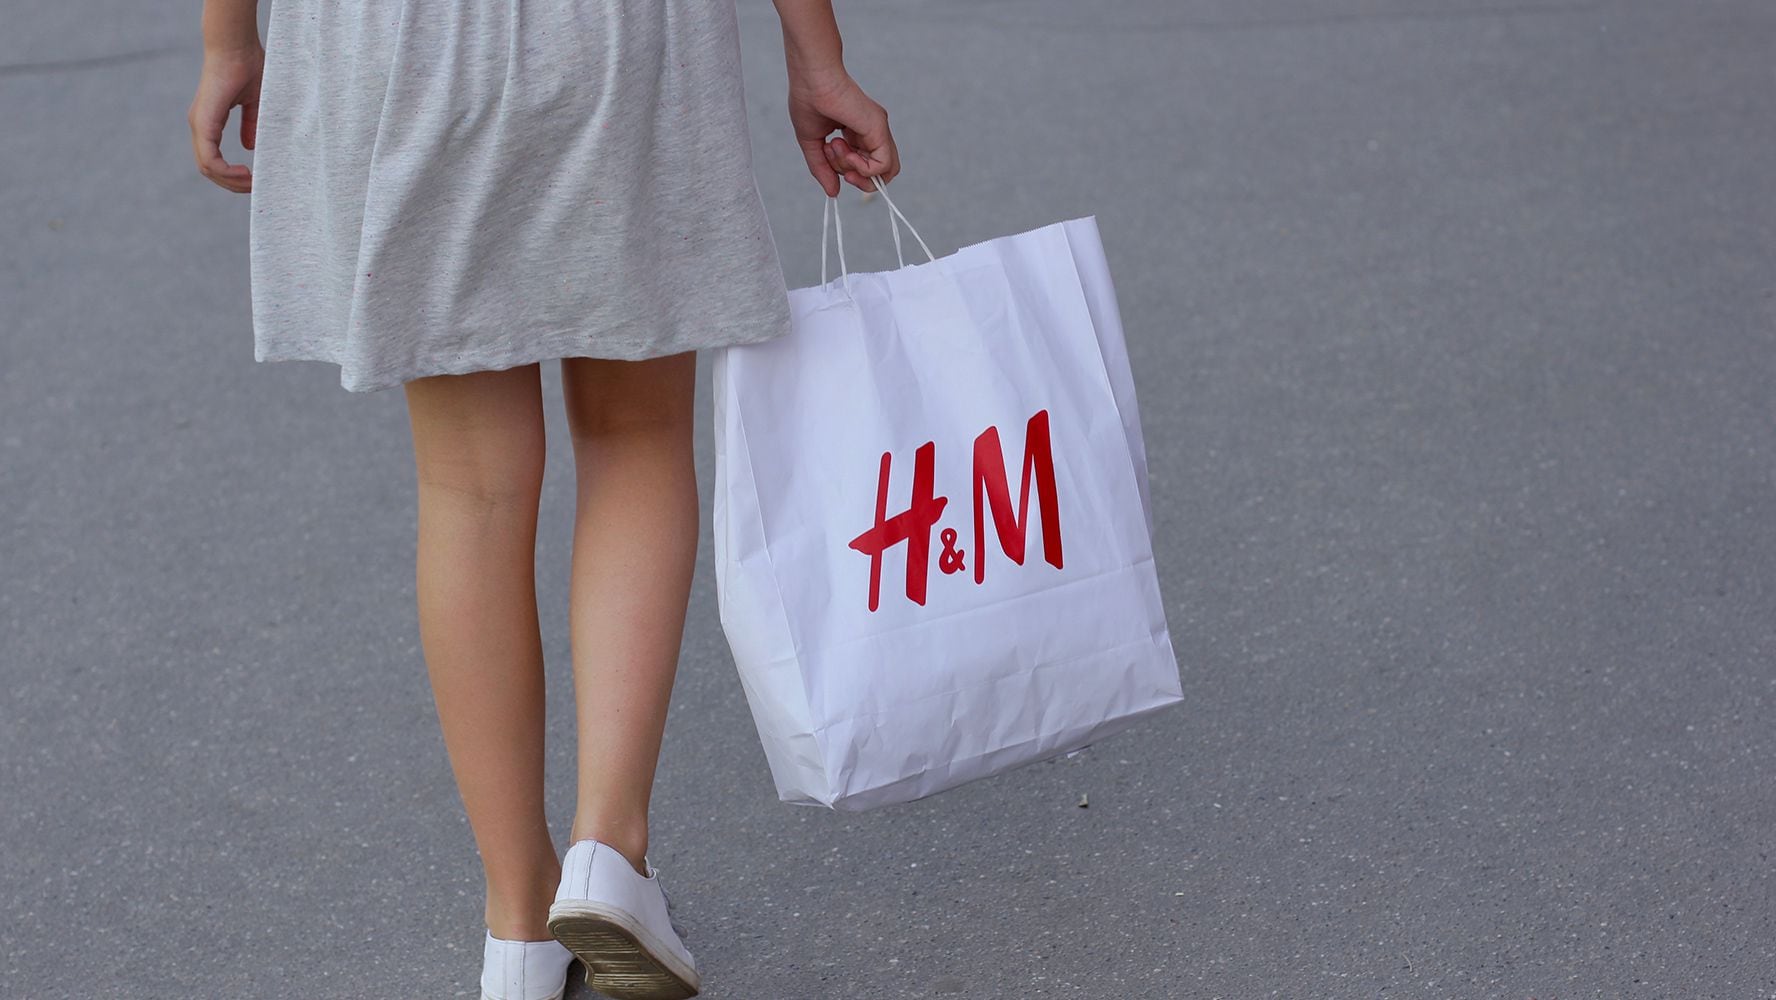 Cupom de mil ienes na H&M: basta levar uma sacola de roupas que quer  descartar - Portal Mie